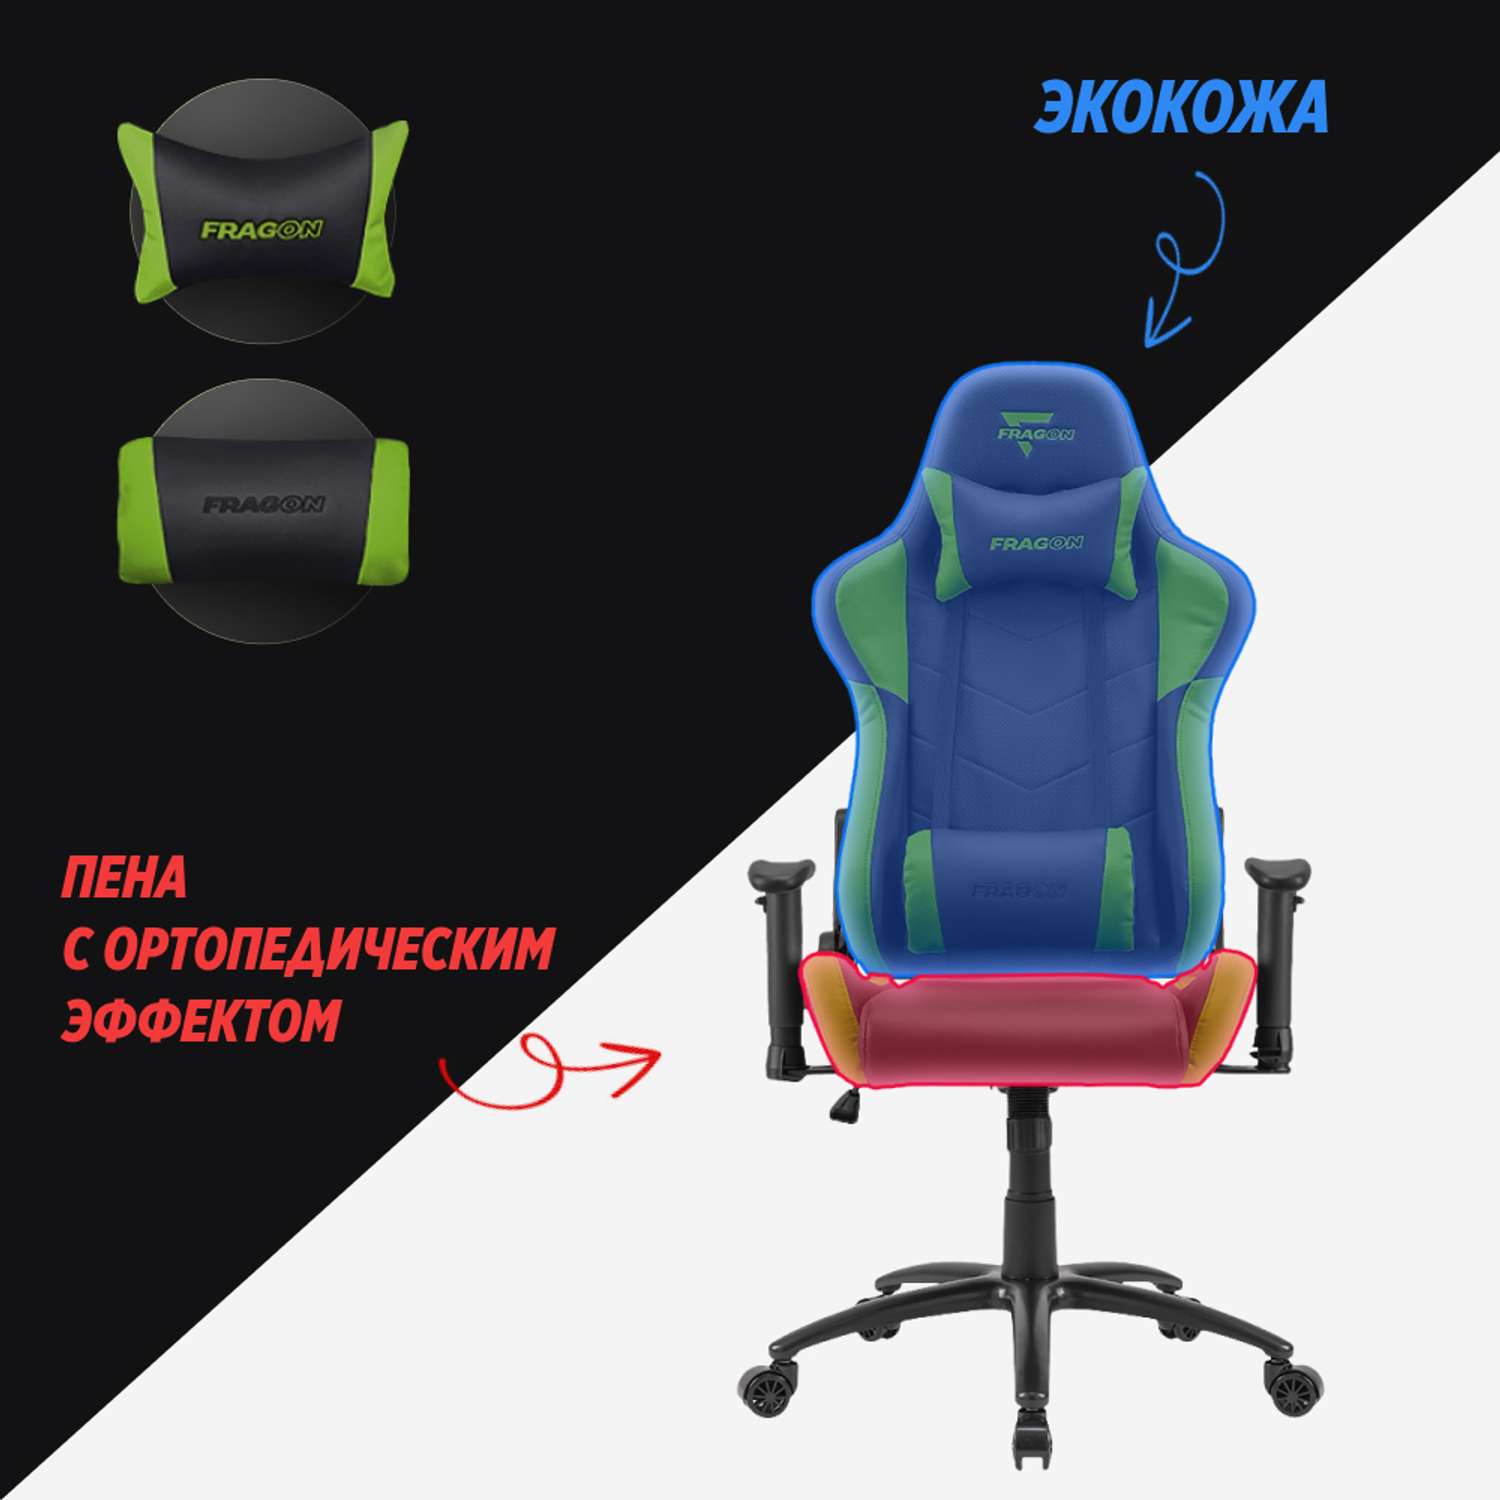 Компьютерное кресло GLHF серия 2X Black/Green - фото 4